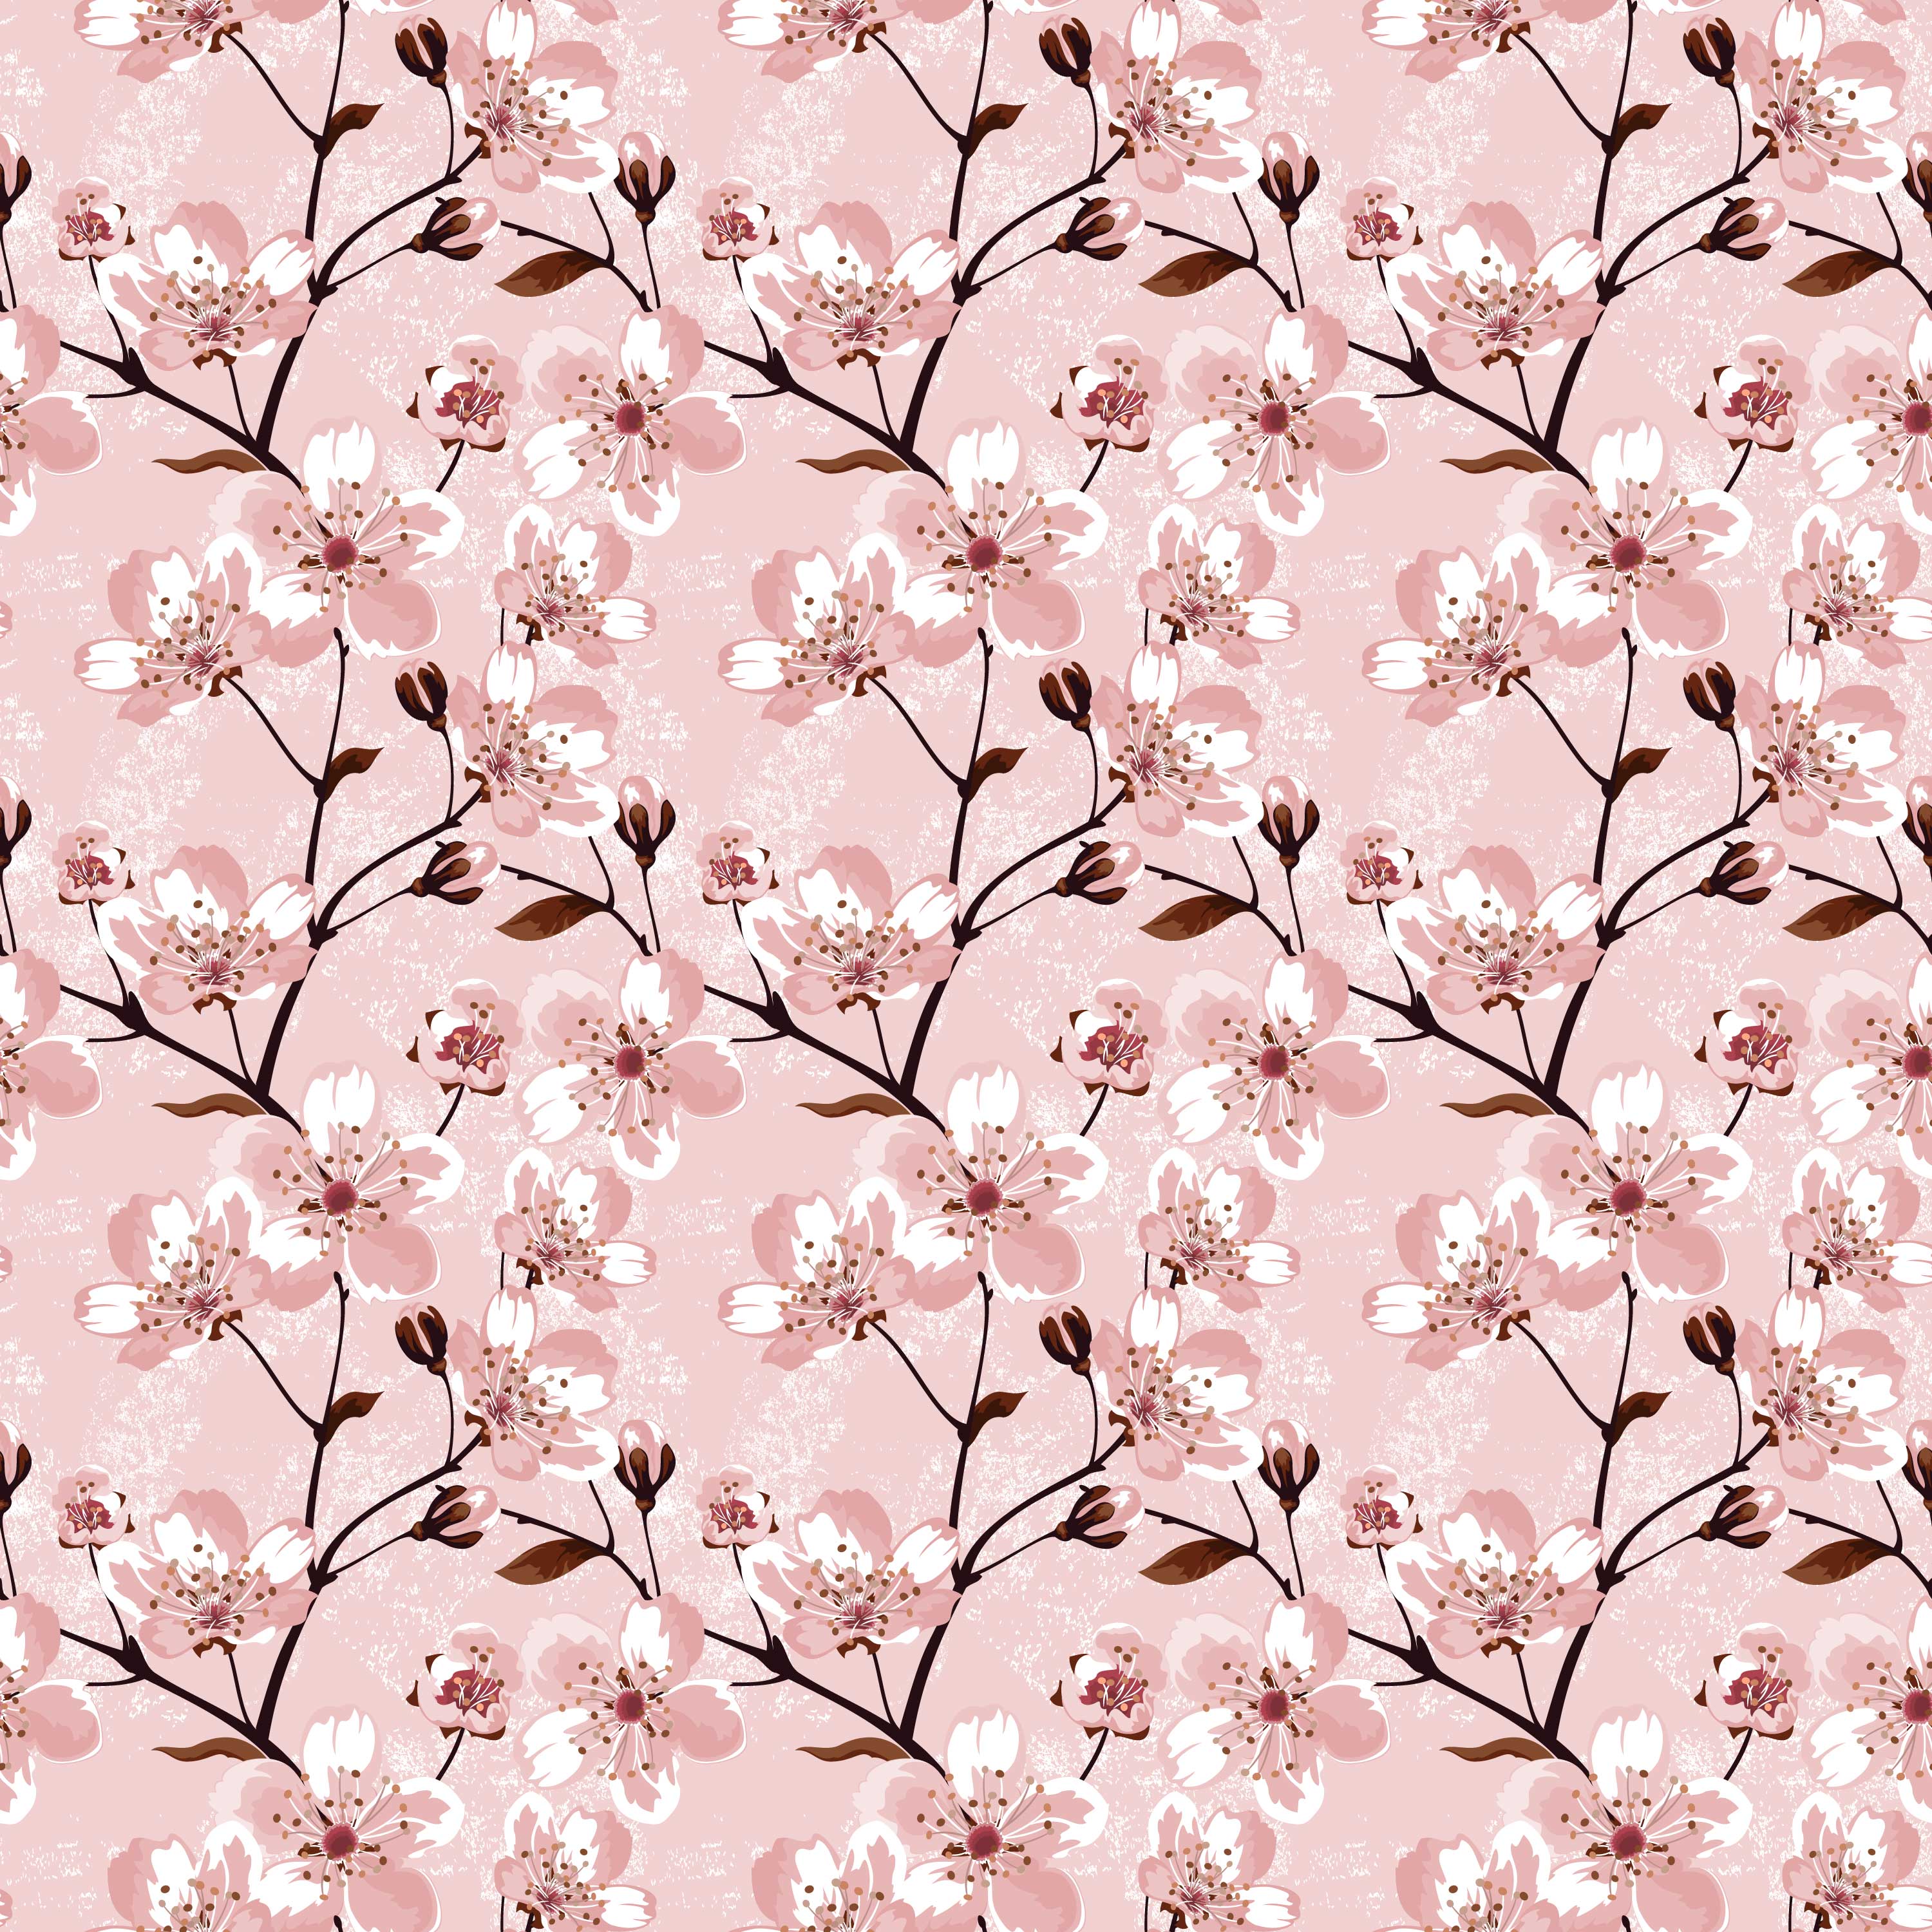 壁紙 背景イラスト 花の模様 柄 パターン No 211 ピンク 枝葉